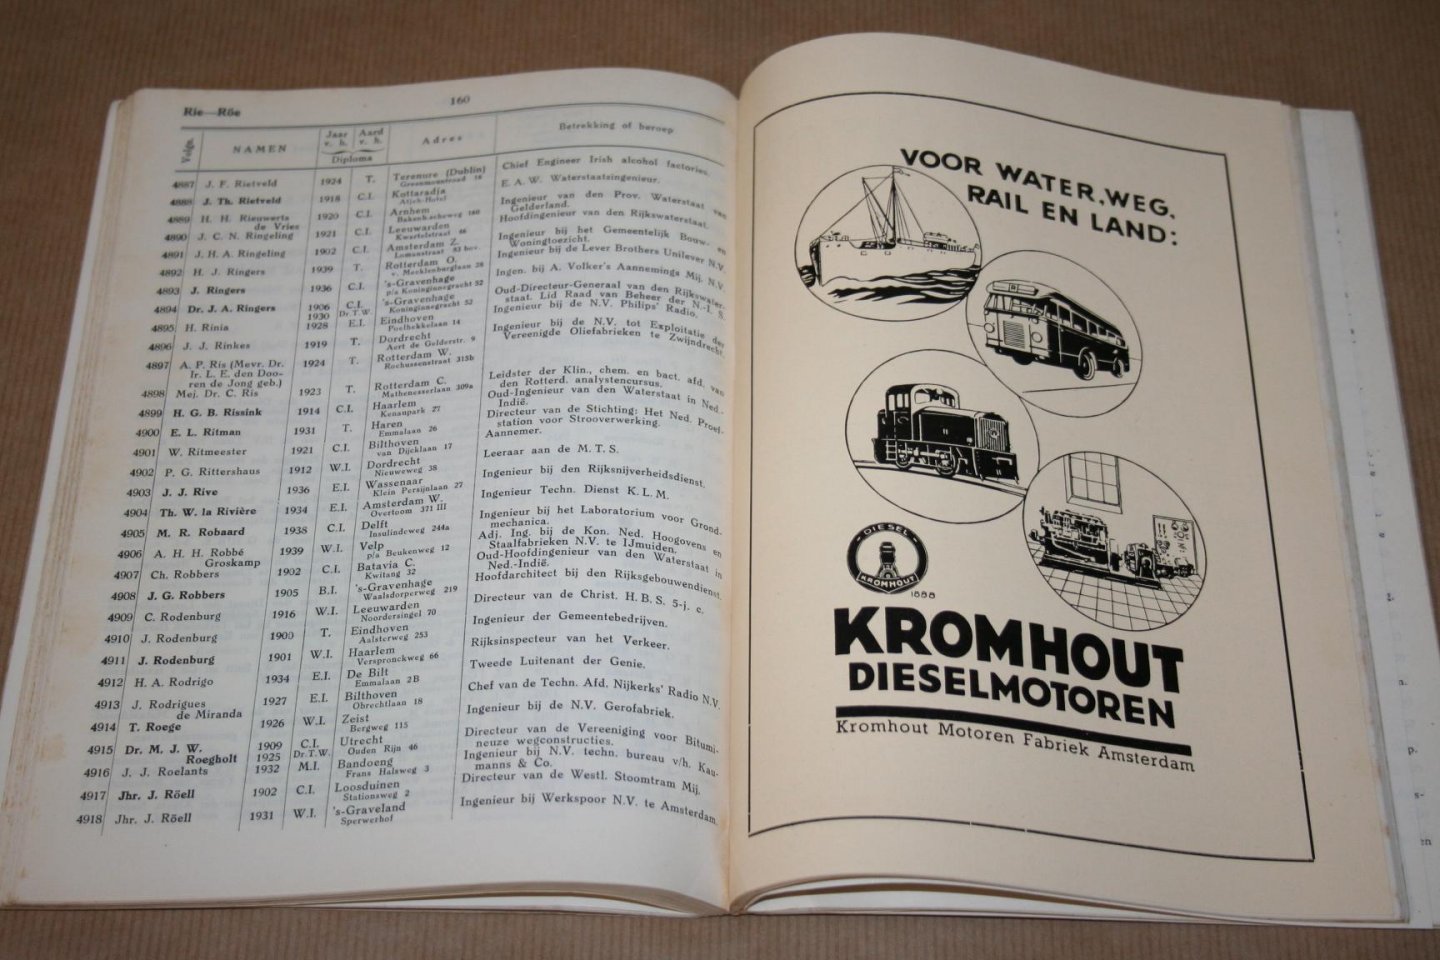  - Adresboek 1940 -  van de Ingenieurs en Technologen  gediplomeerd aan de Polytechnische School & de Technische Hoogeschool